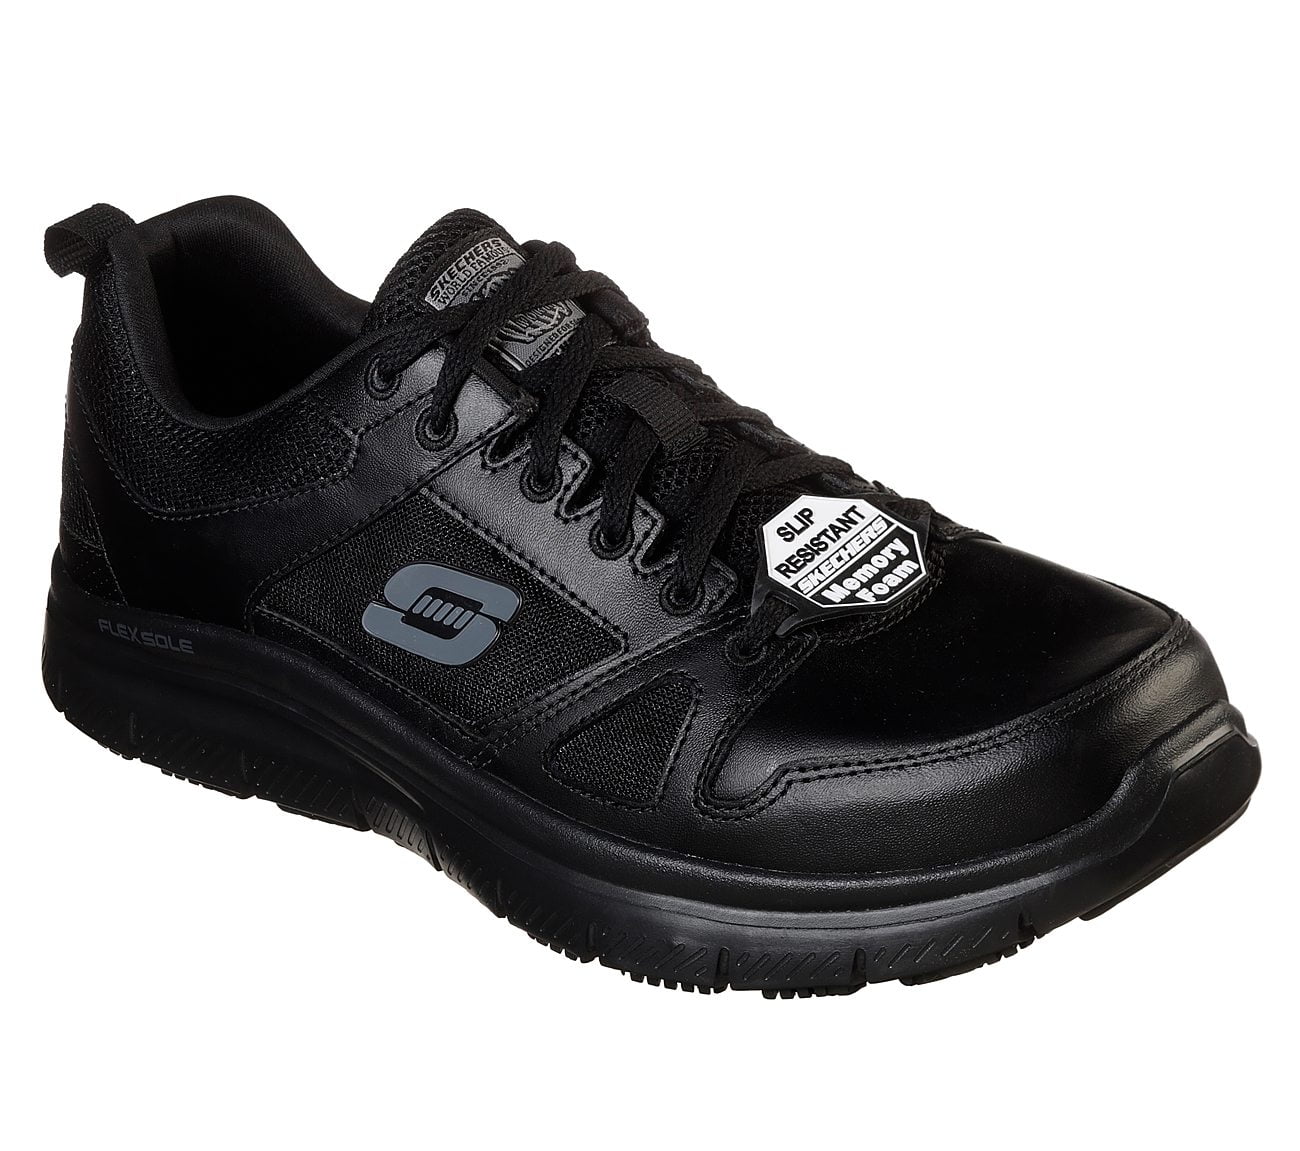 Descuido seguramente Infrarrojo Skechers Men's Flex Advantage SR Work Shoe, Black/Black, 8 W US -  Walmart.com